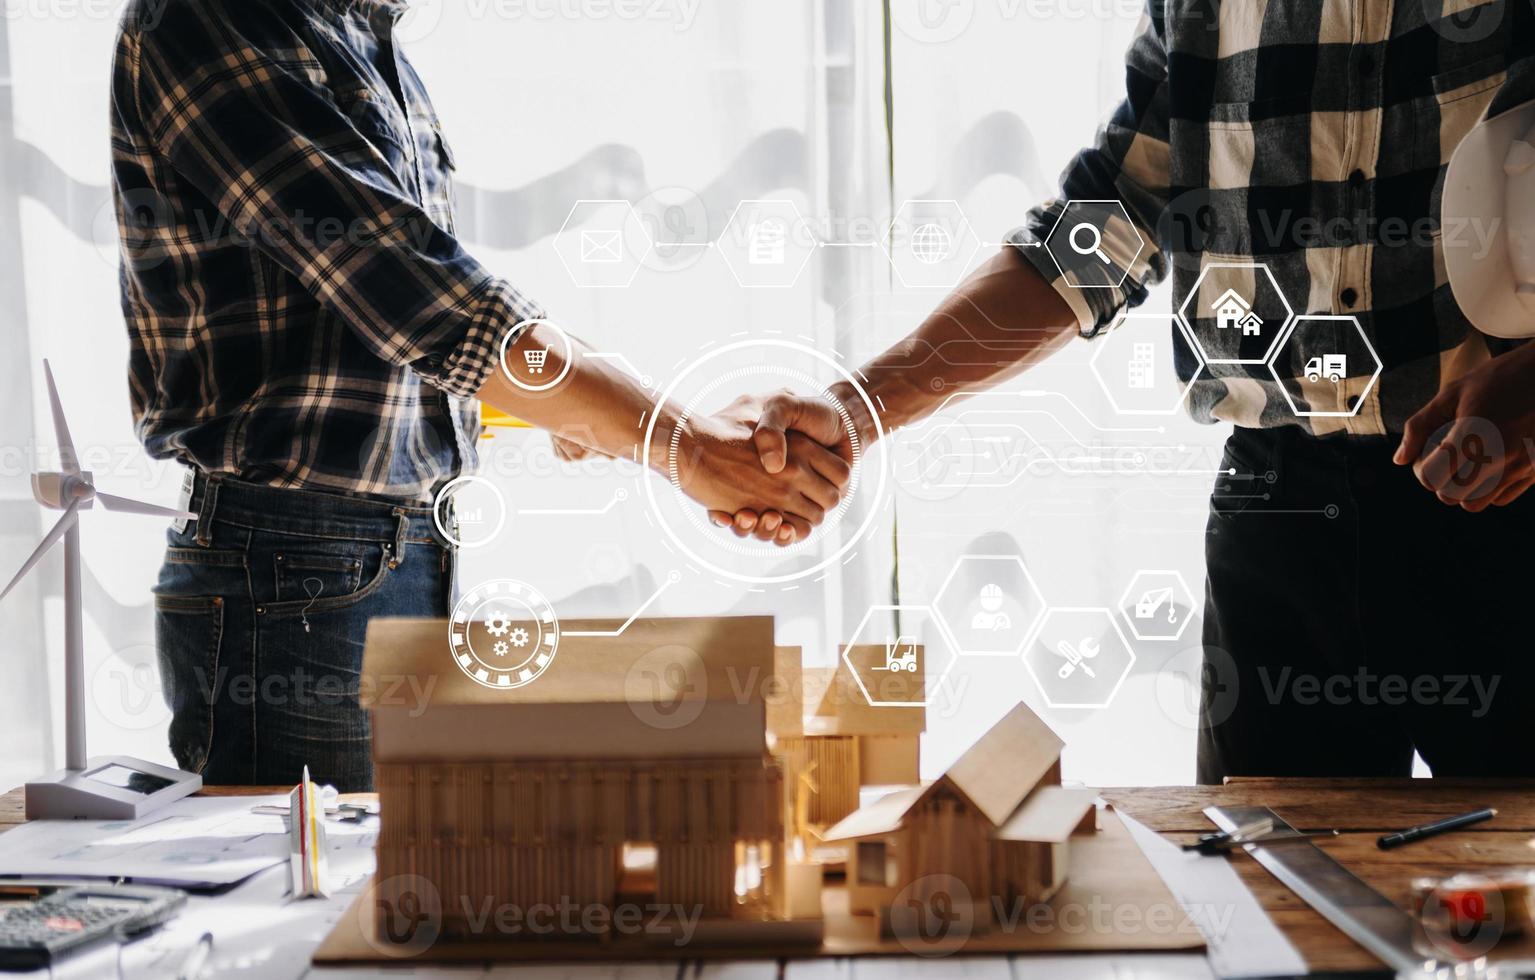 engenheiro e empreiteiro dão as mãos após a assinatura do contrato, eles estão tendo um projeto de construção moderno juntos. foto